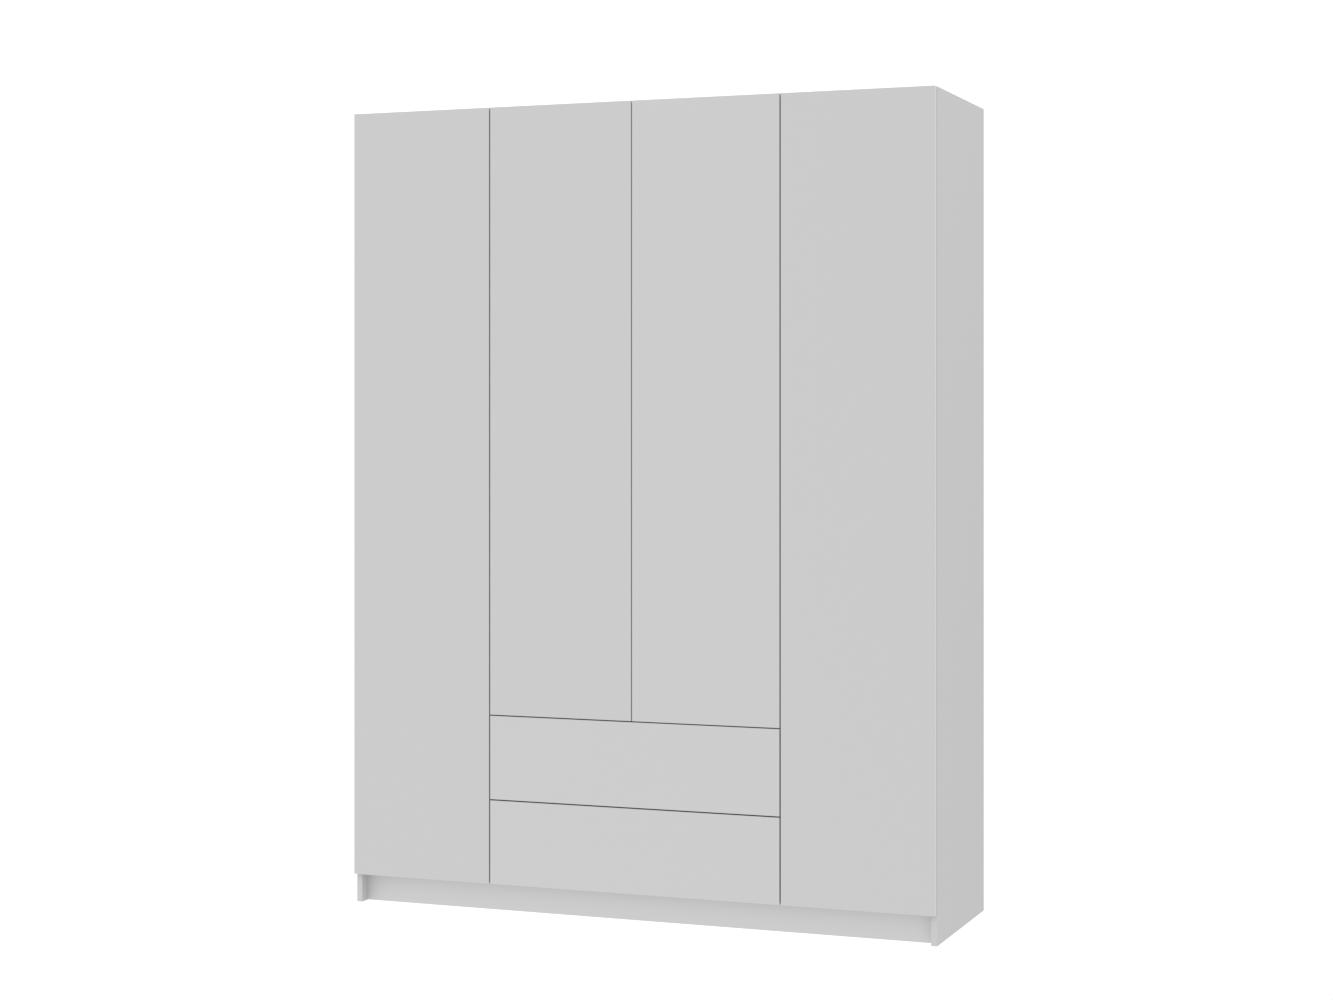 Распашной шкаф Пакс Форсанд 19 white ИКЕА (IKEA) изображение товара